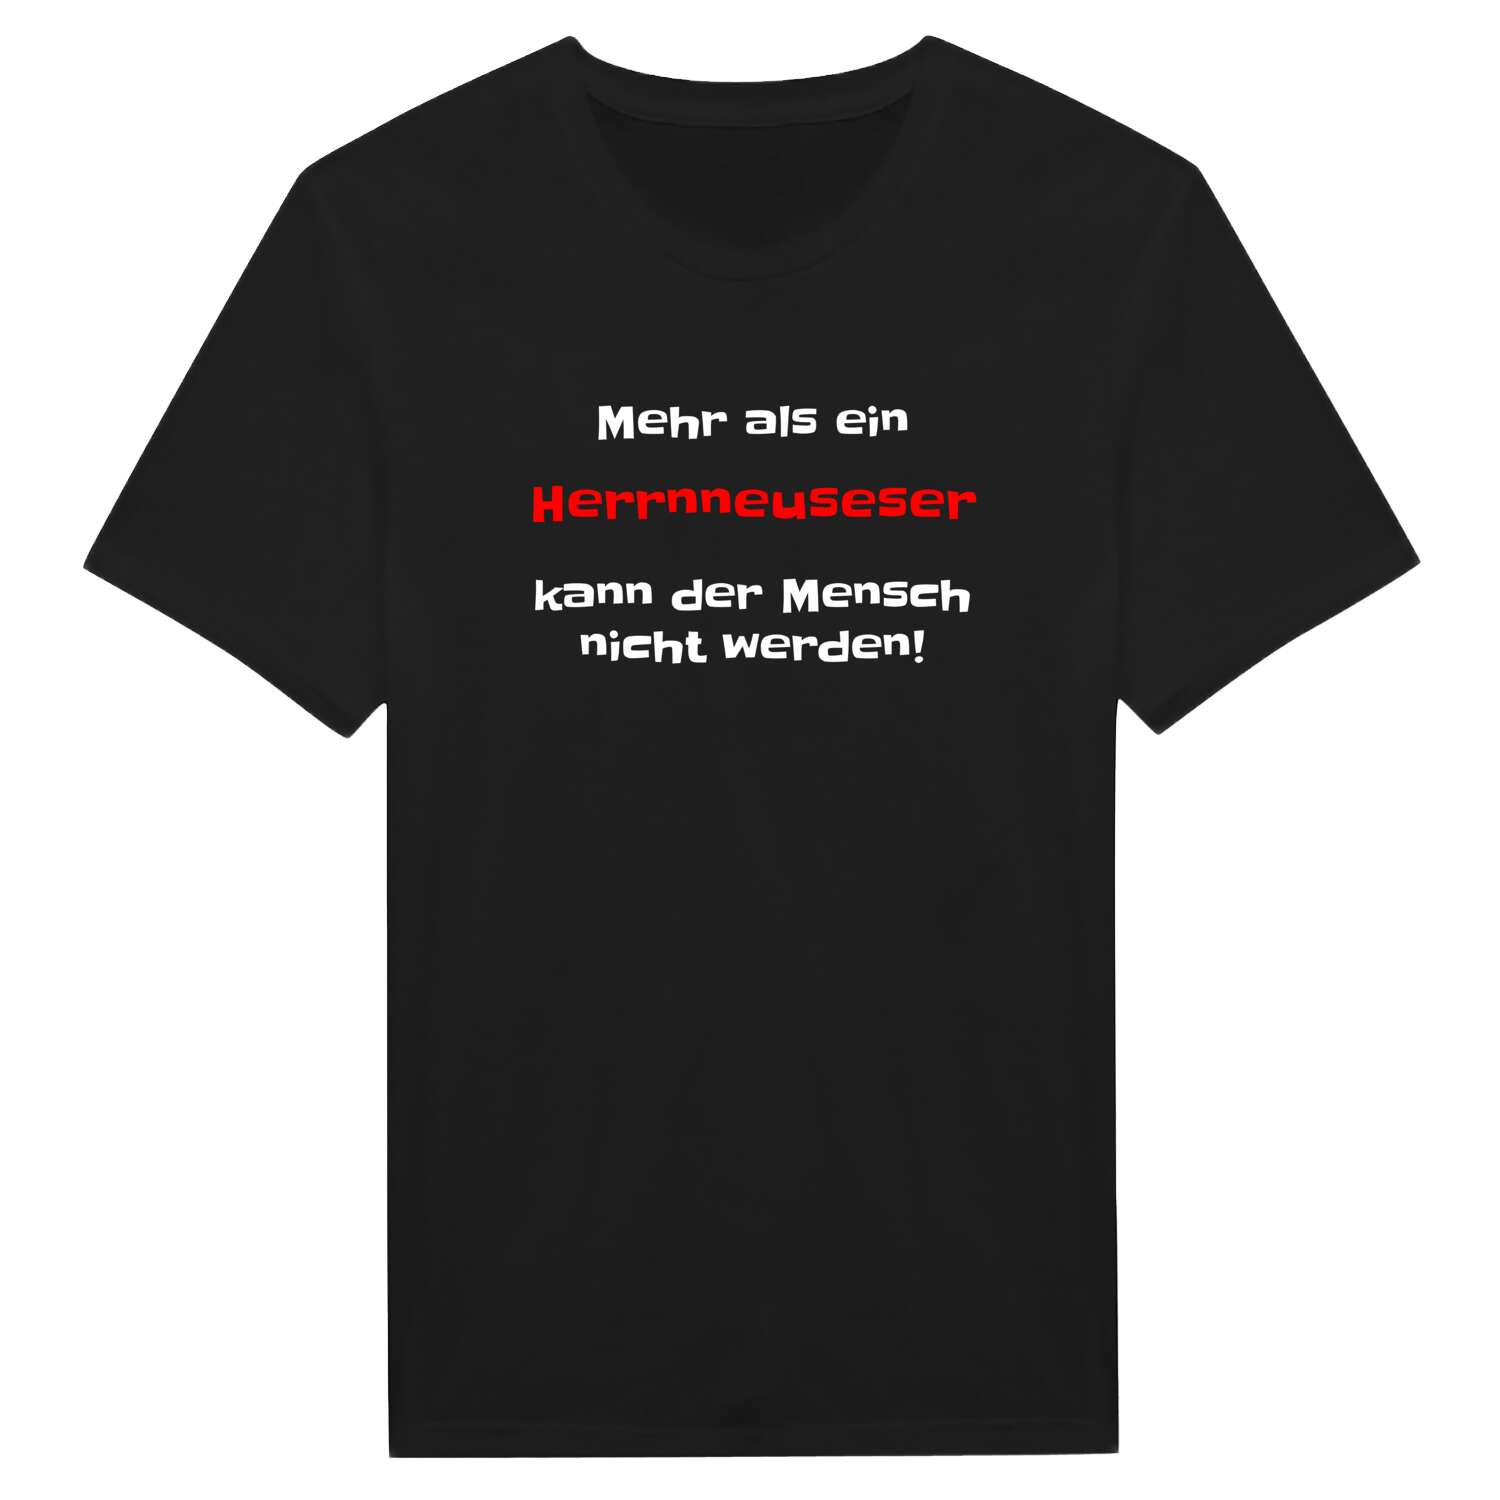 Herrnneuses T-Shirt »Mehr als ein«